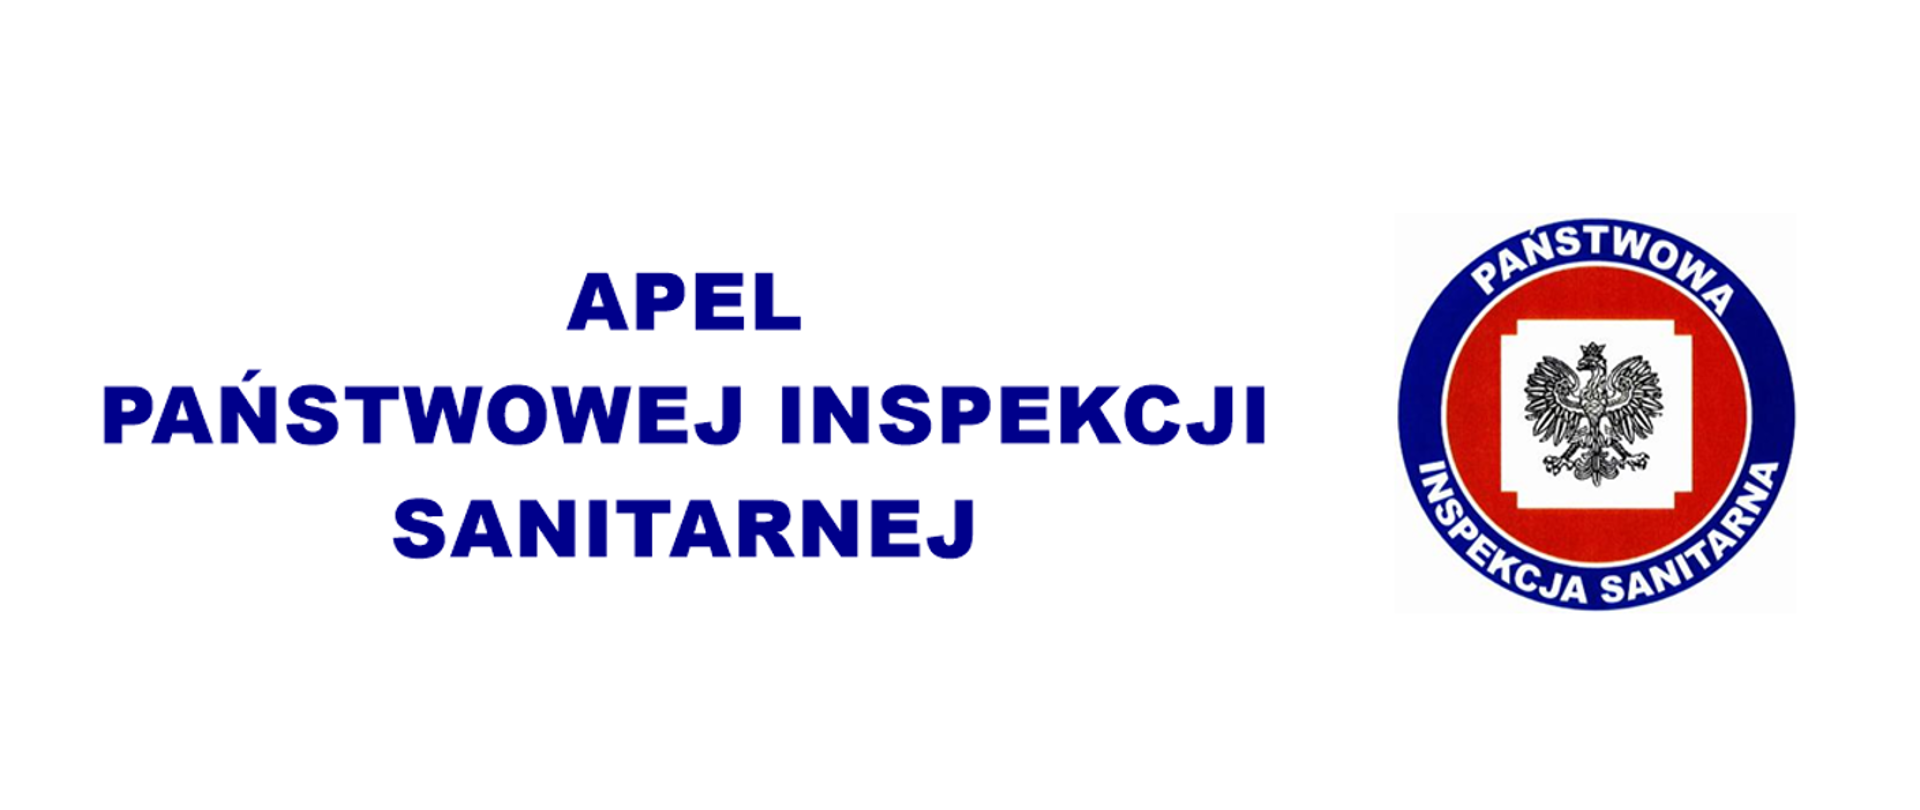 Grafika z tekstem "Apel Państwowej Inspekcji Sanitarnej" i logiem PIS